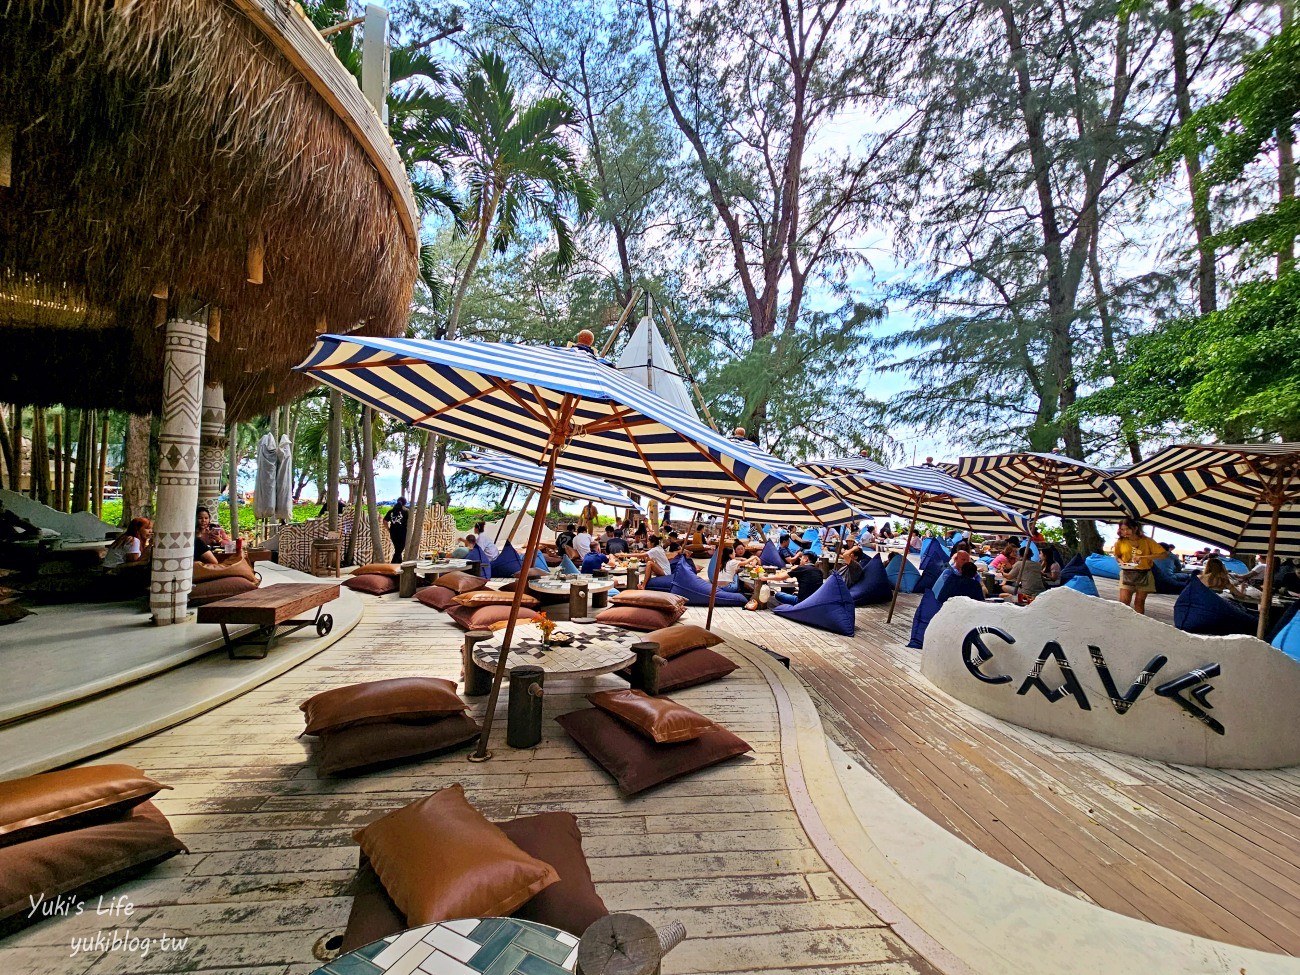 泰國┃芭達雅網美咖啡廳┃Cave Beach Club~度假氣氛超讚.食物好吃不踩雷 - yukiblog.tw